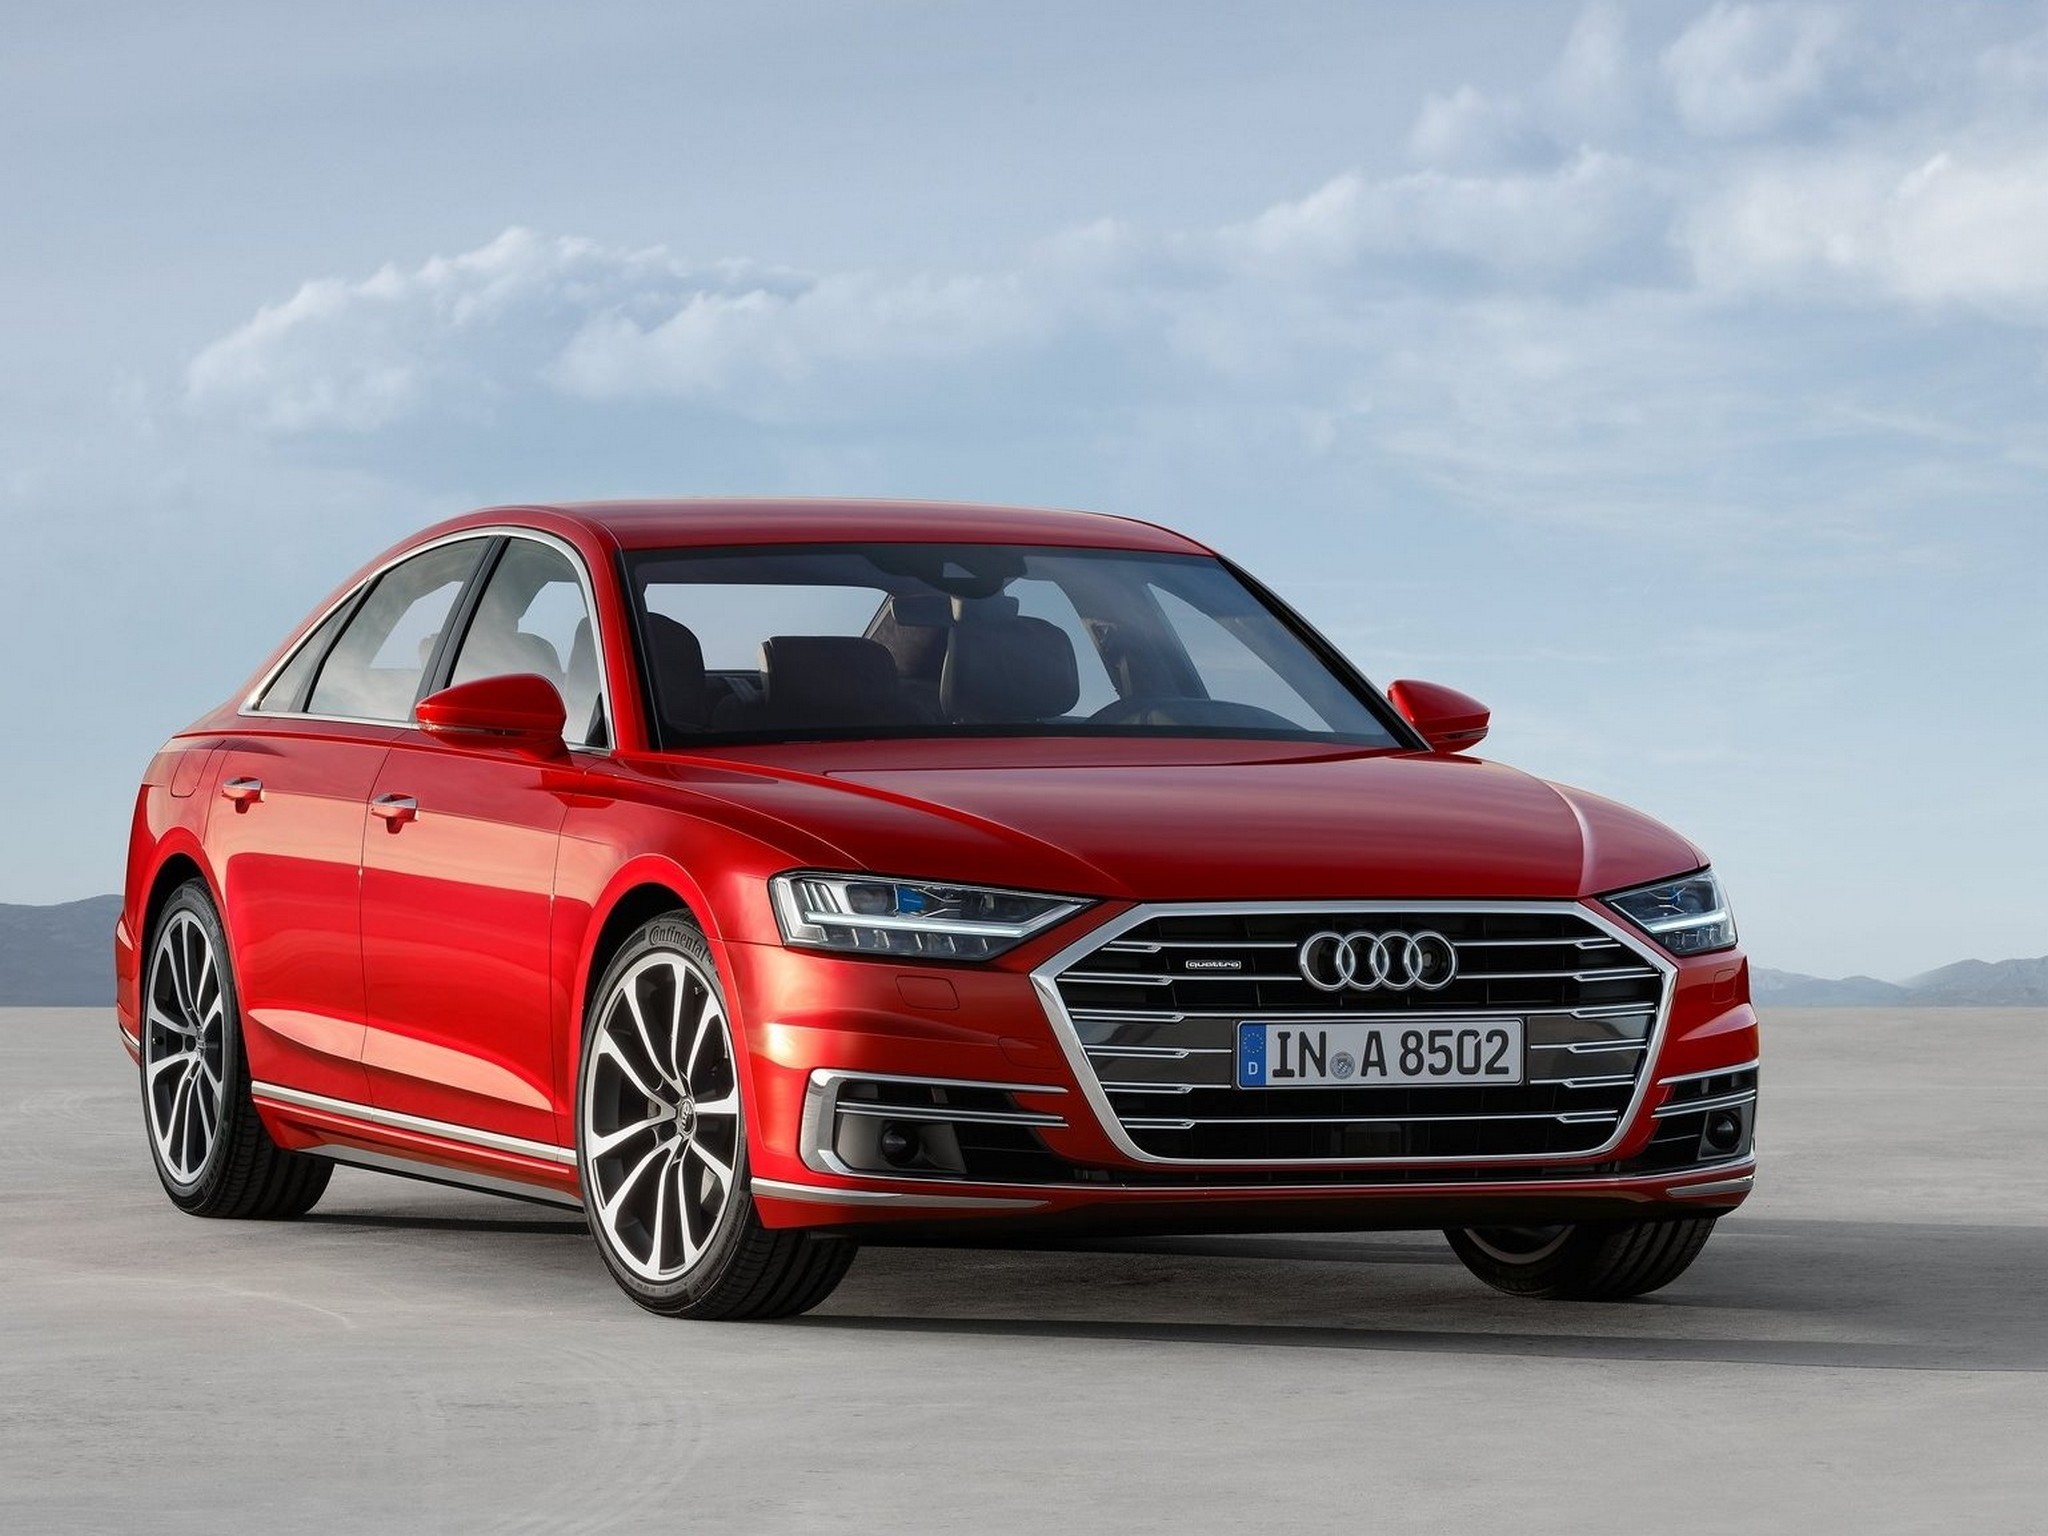 Audi A8 2018 – La nouvelle génération du vaisseau amiral Audi